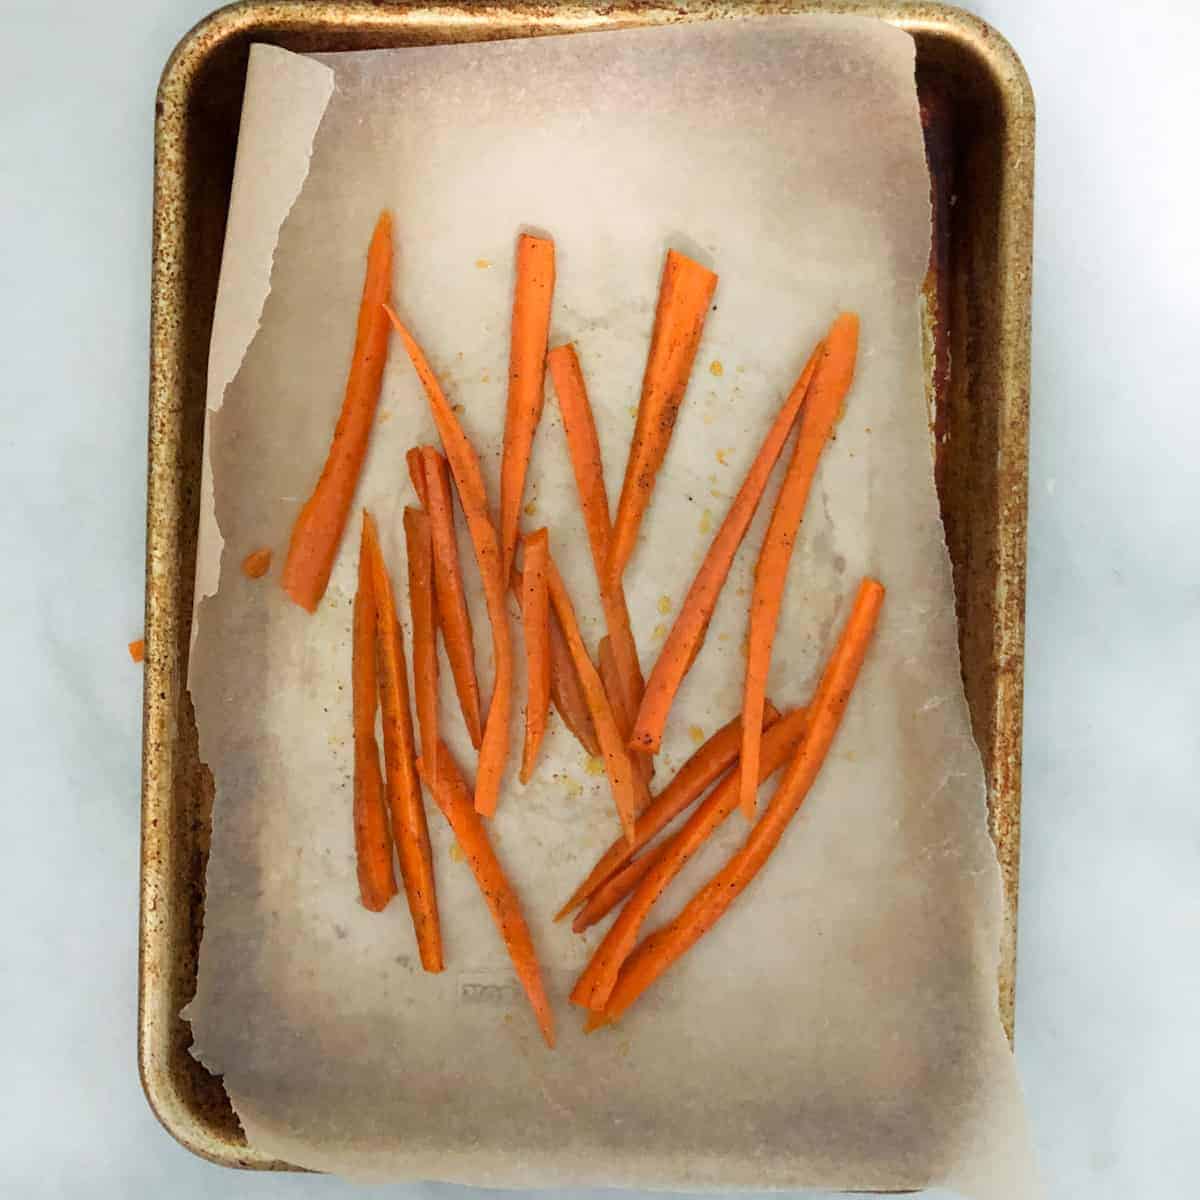 Sliced carrots on baking sheet.